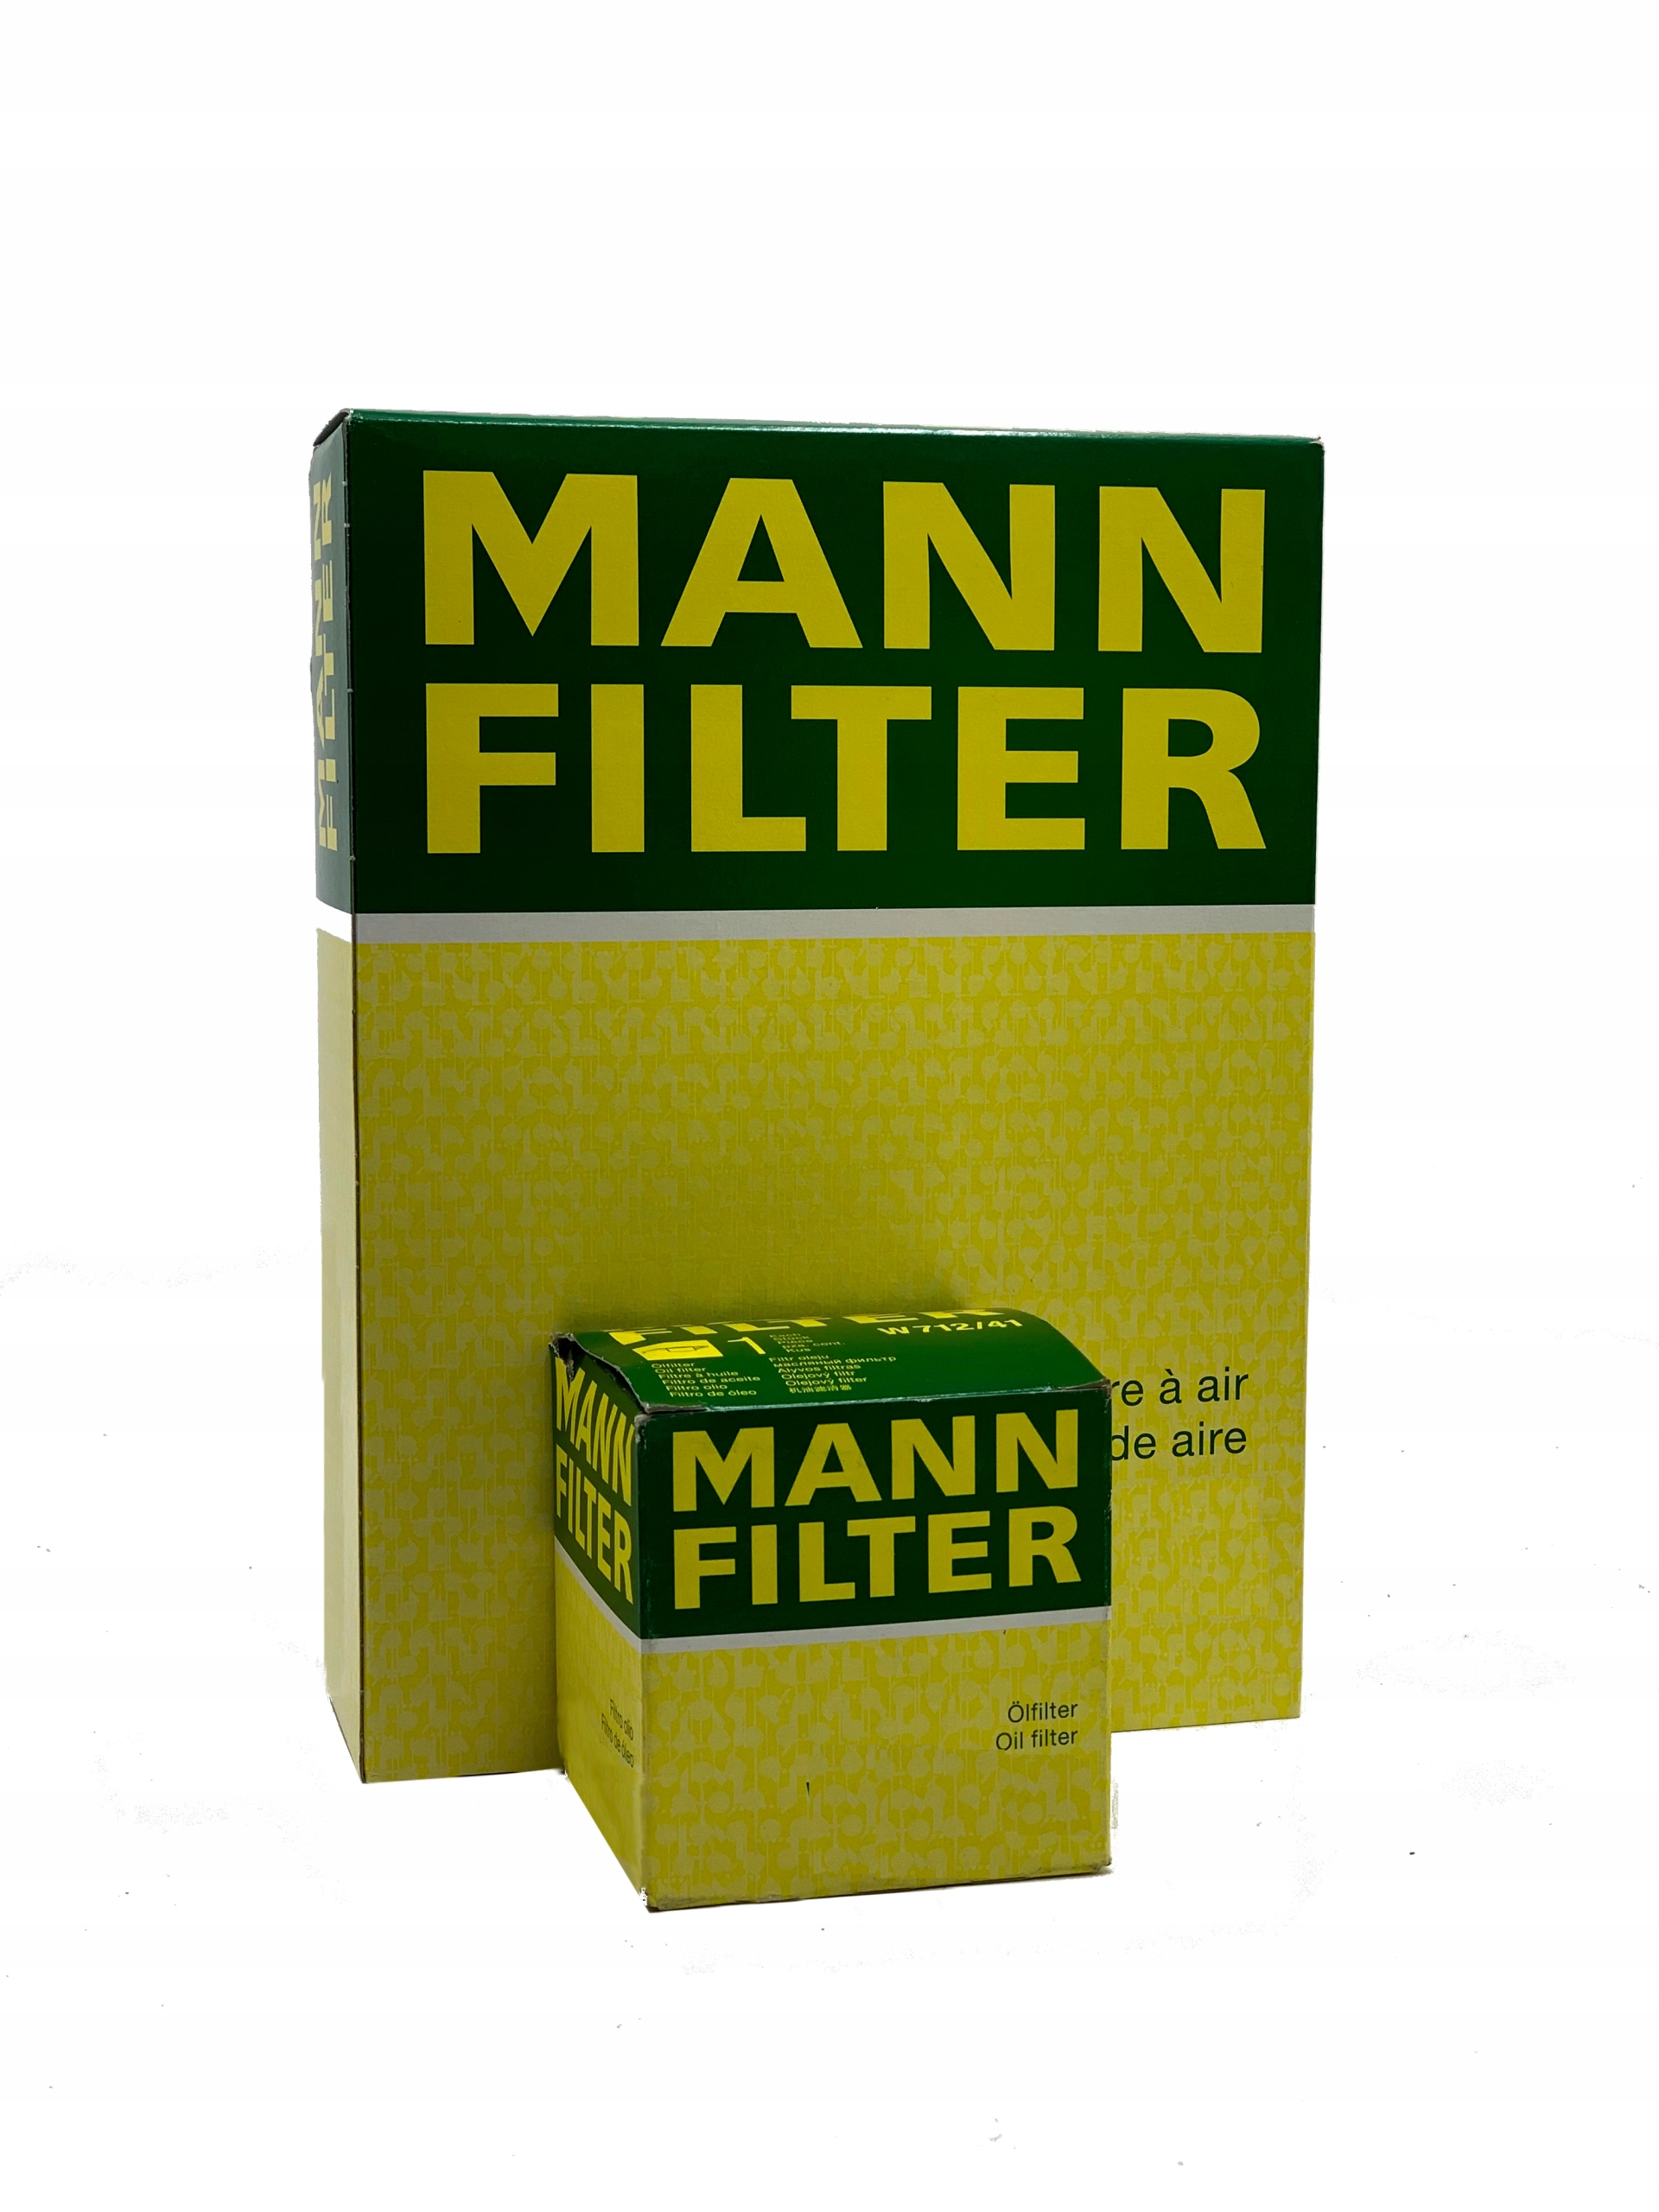 Filtro de Aceite MANN FILTER HU 7008 z - SEAT LEON